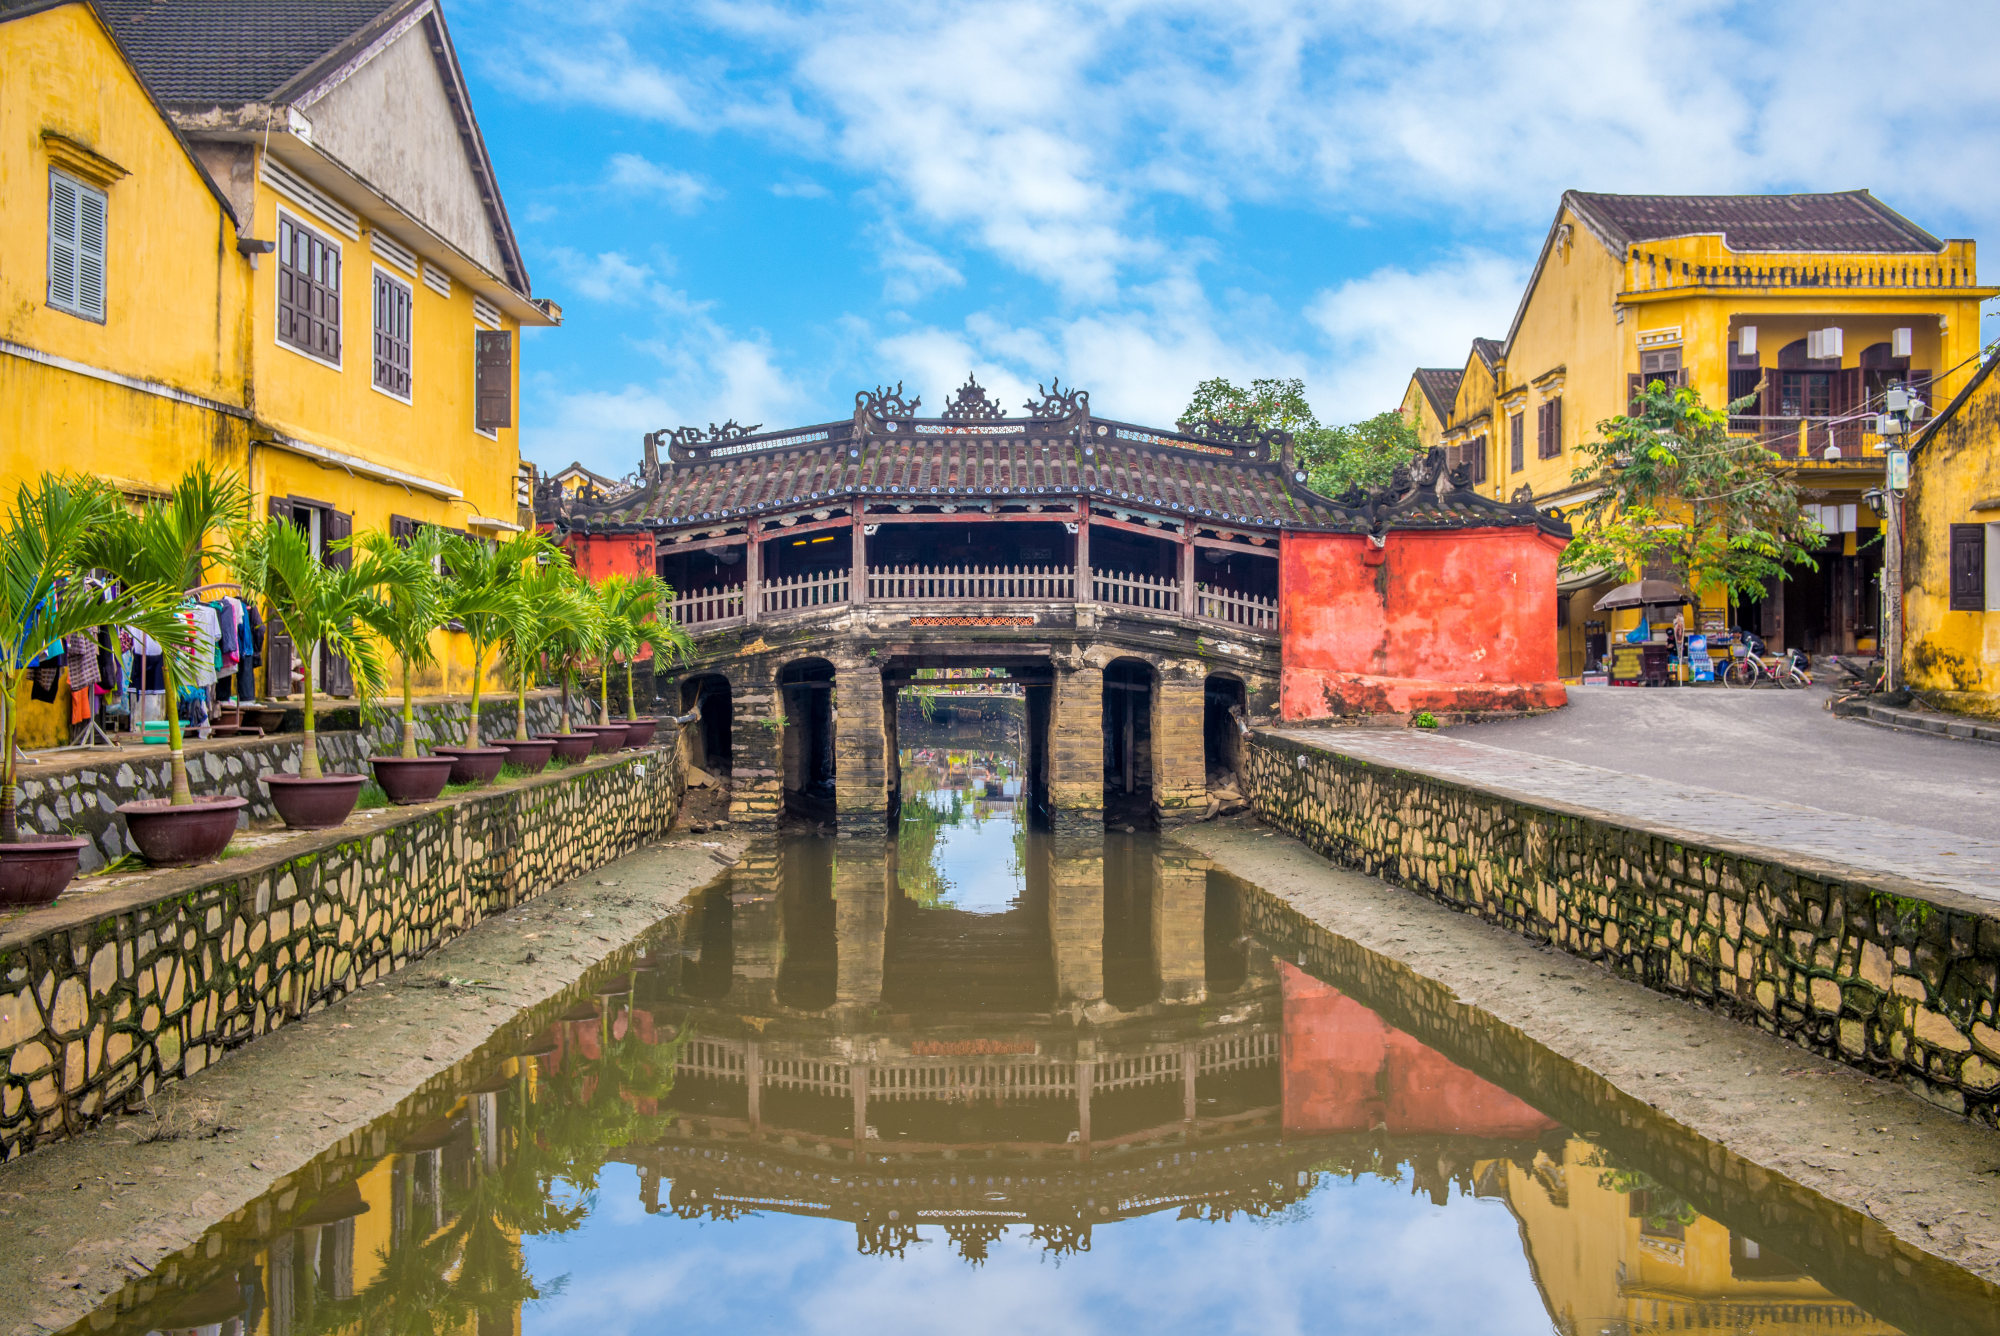 Chùa cầu bắc qua một nhánh của sông Thu Bồn từ những năm 1590. Ảnh: Shutterstock